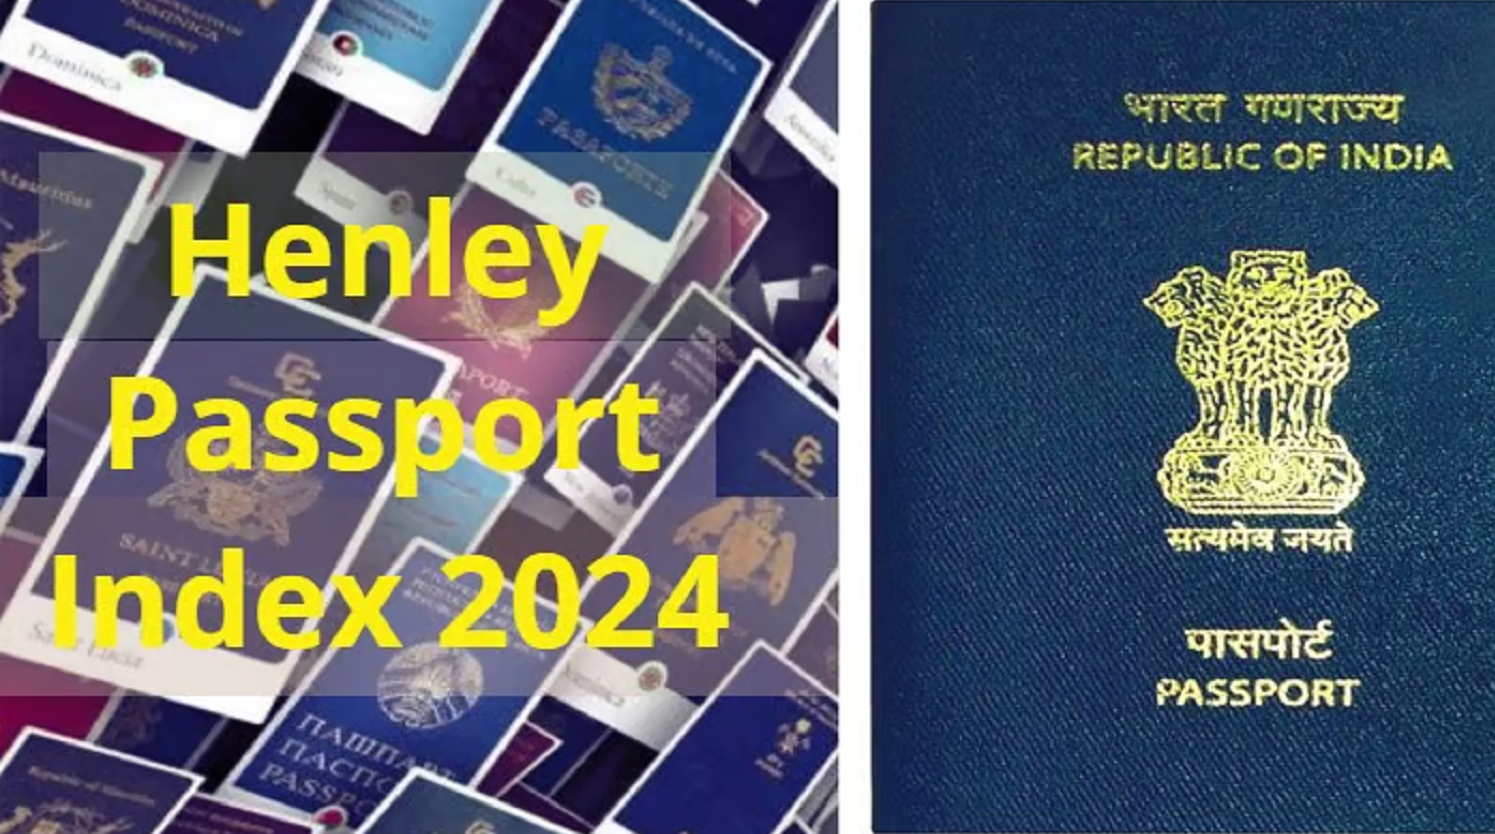 Henley Passport Index 2024: विश्व Passport रैंकिंग में भारत का कौन सा स्थान? जानिए किस देश का Passport है सबसे ताकतवर?